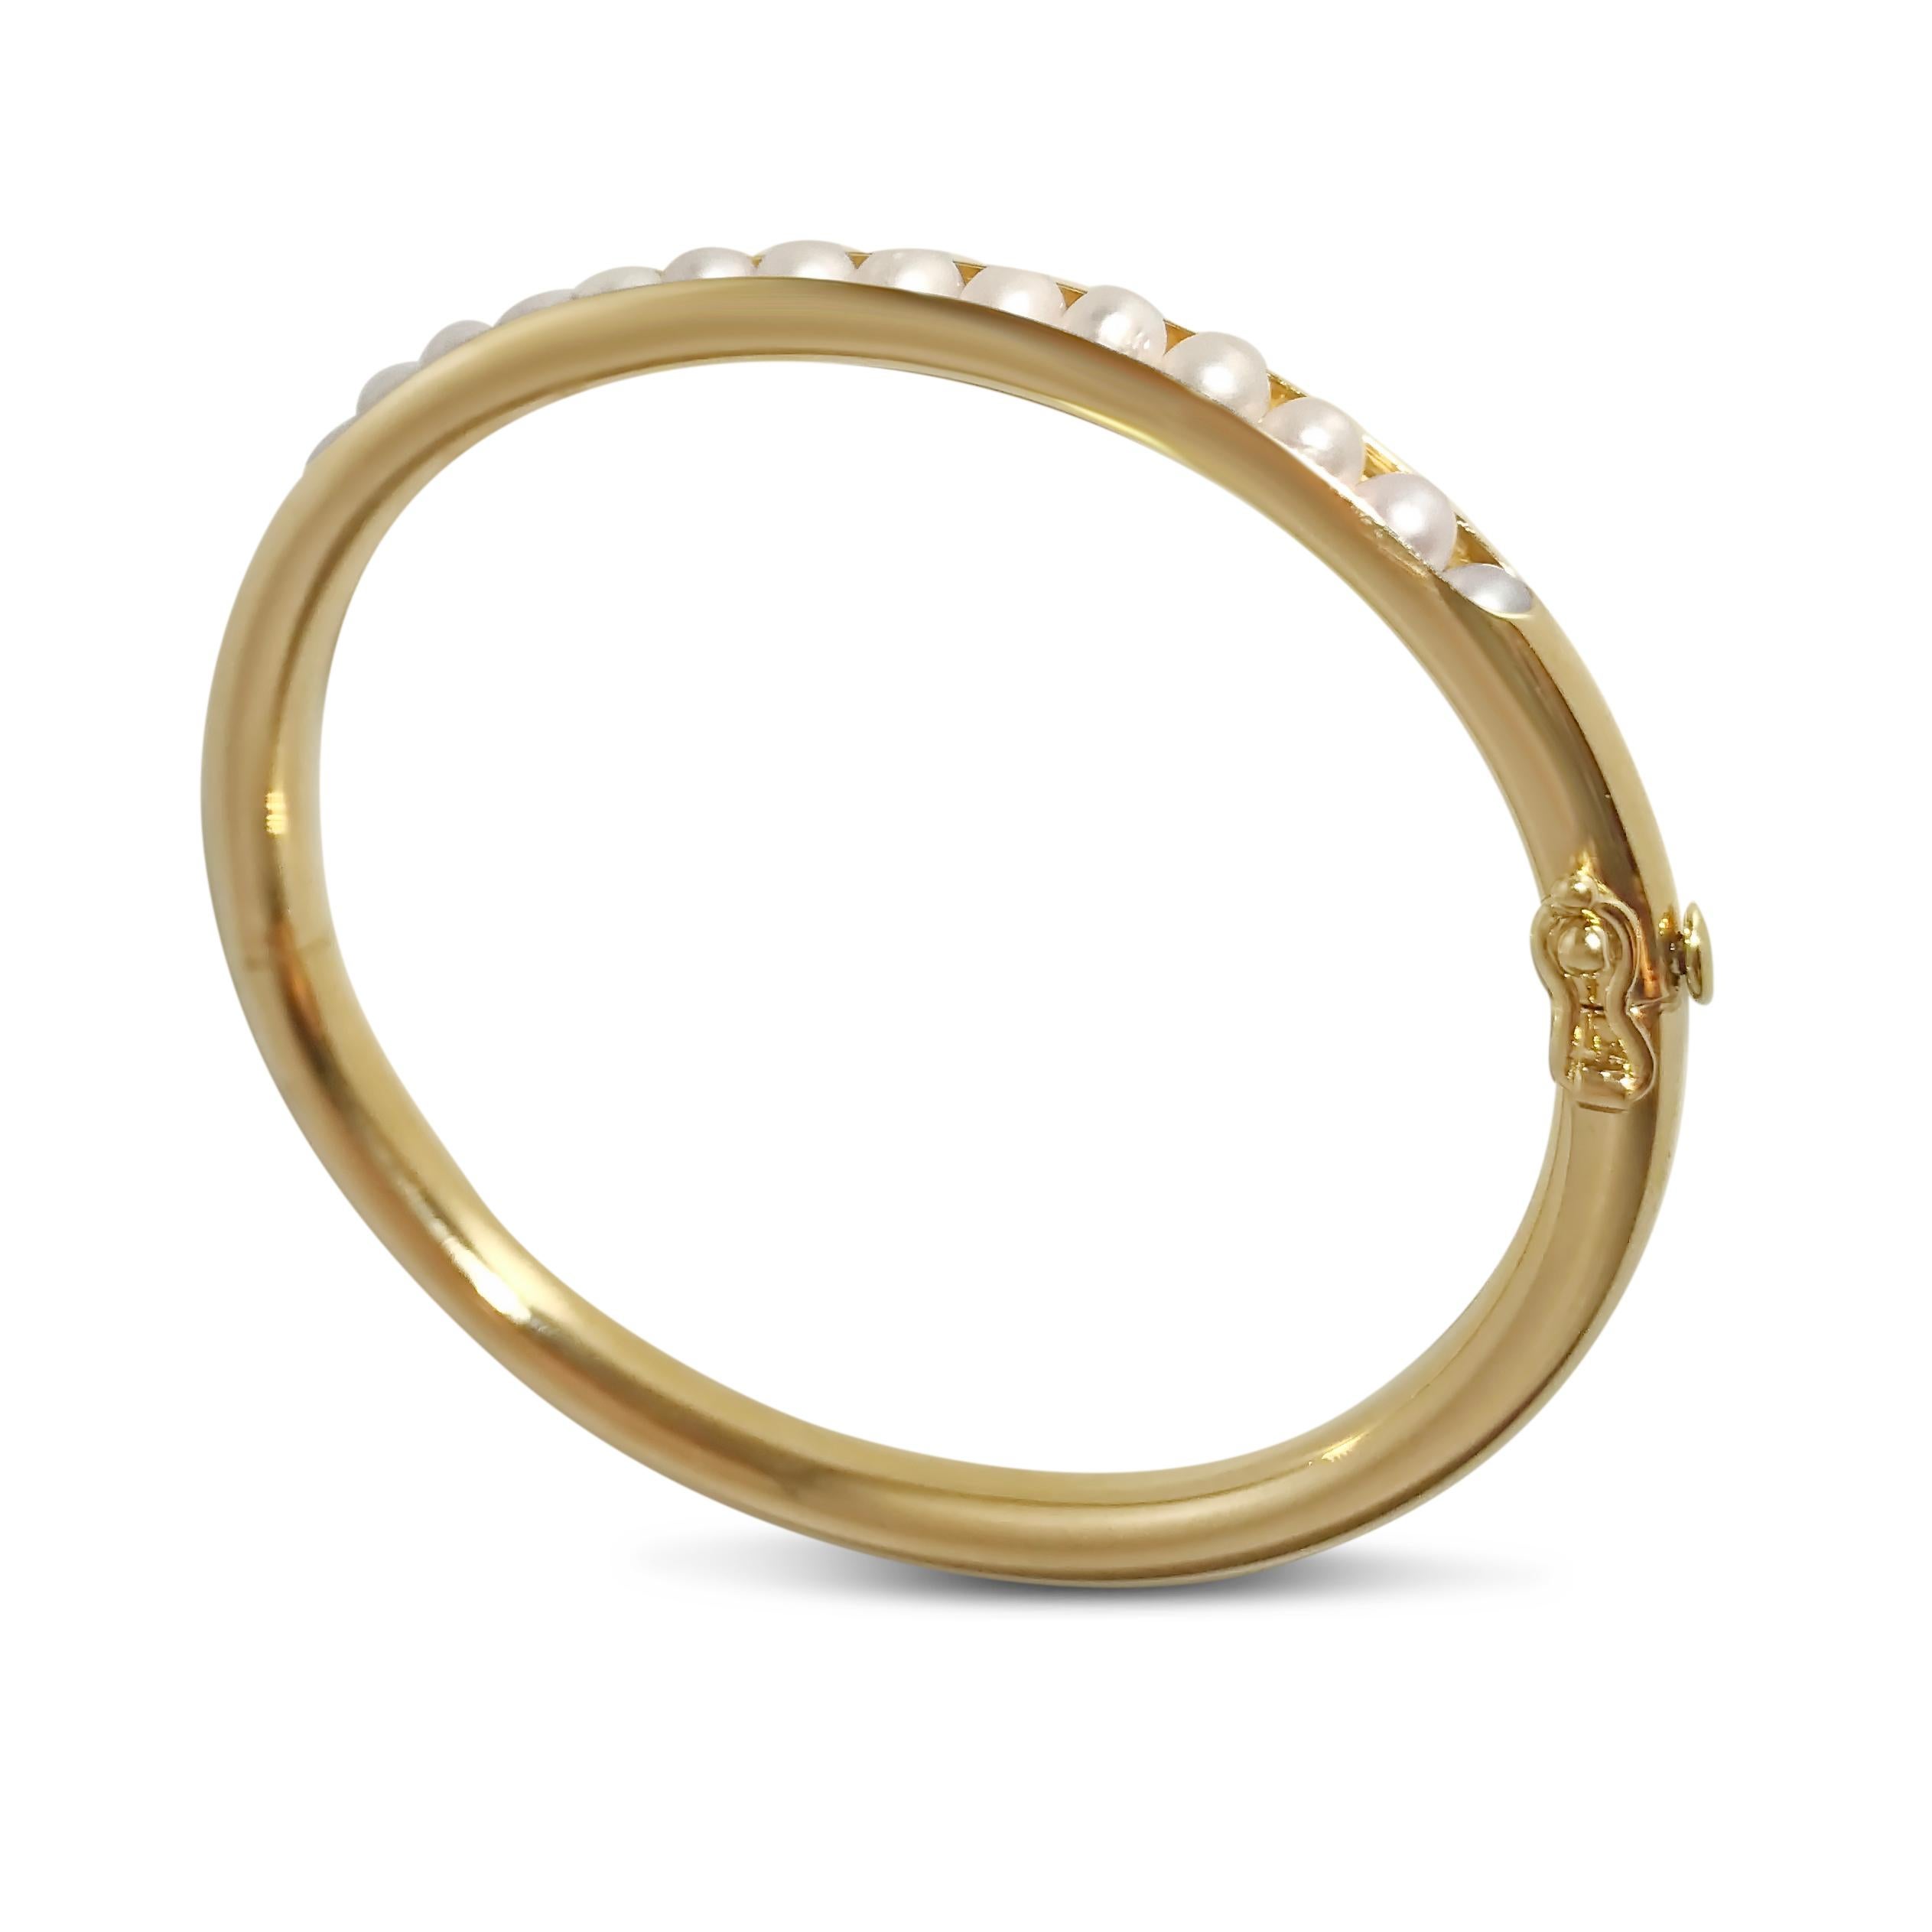 Le moderne rencontre le classique avec notre bangle en or avec perles semi-précieuses incrustées. Notre bracelet 